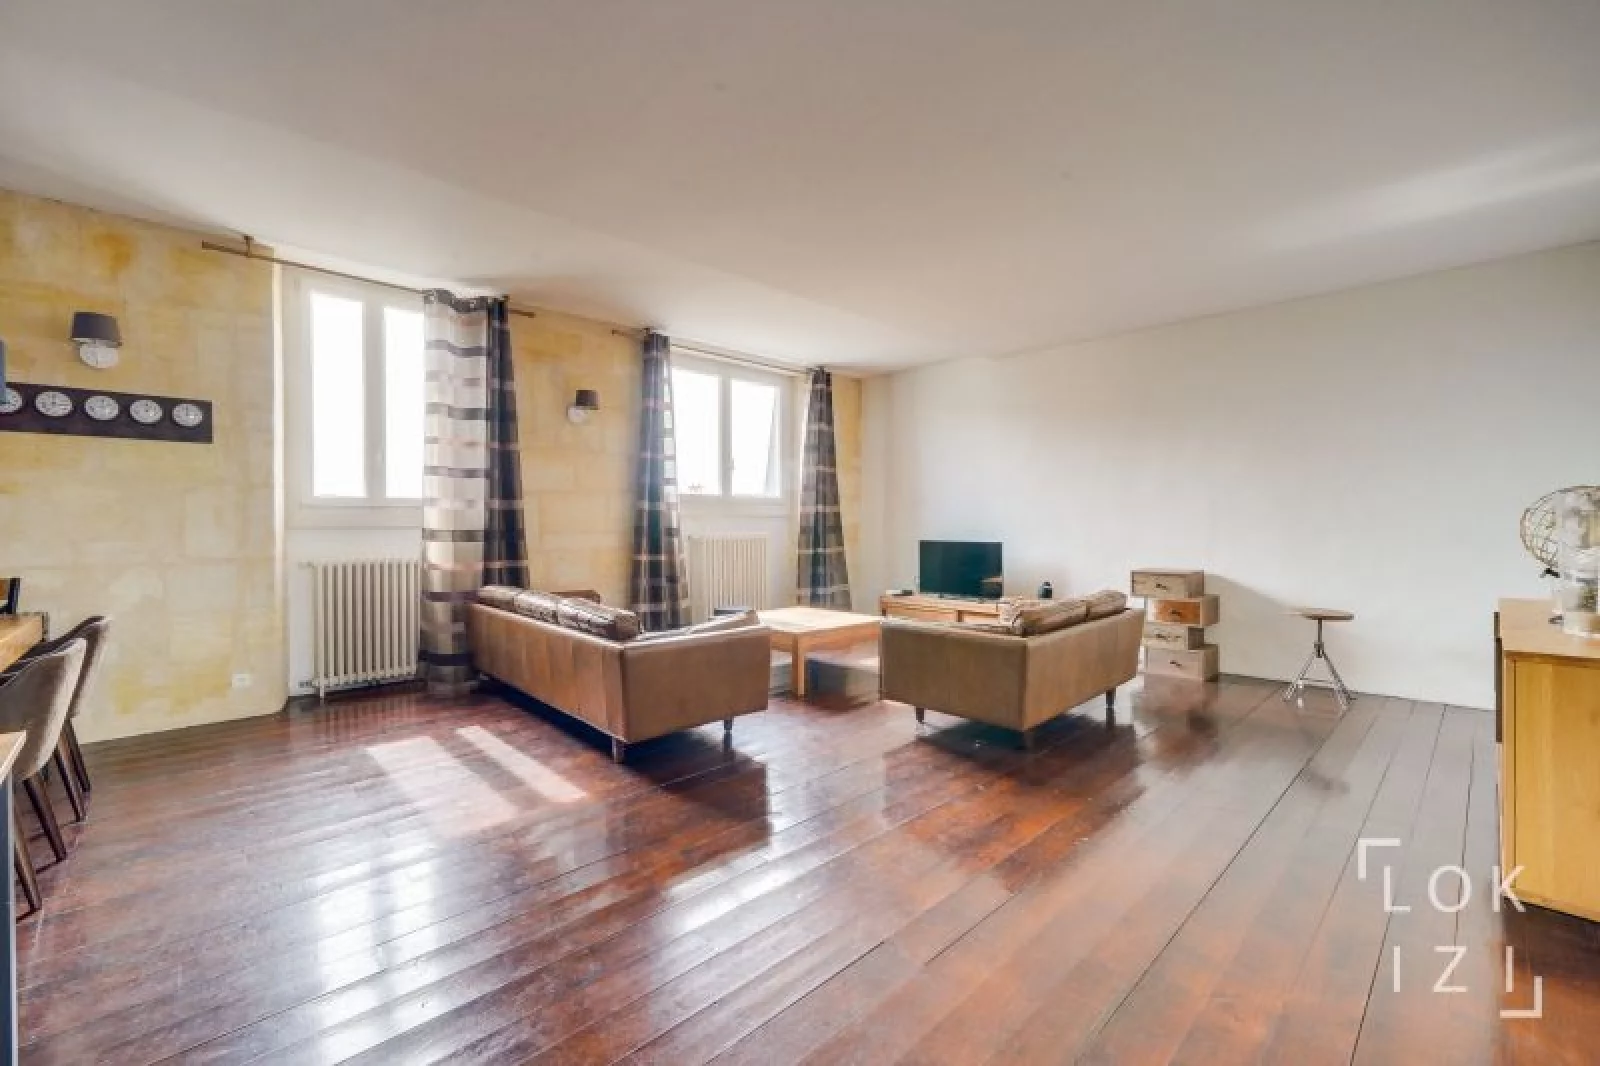 Location appartement meublé 4 pièces 116m² (Bordeaux centre)